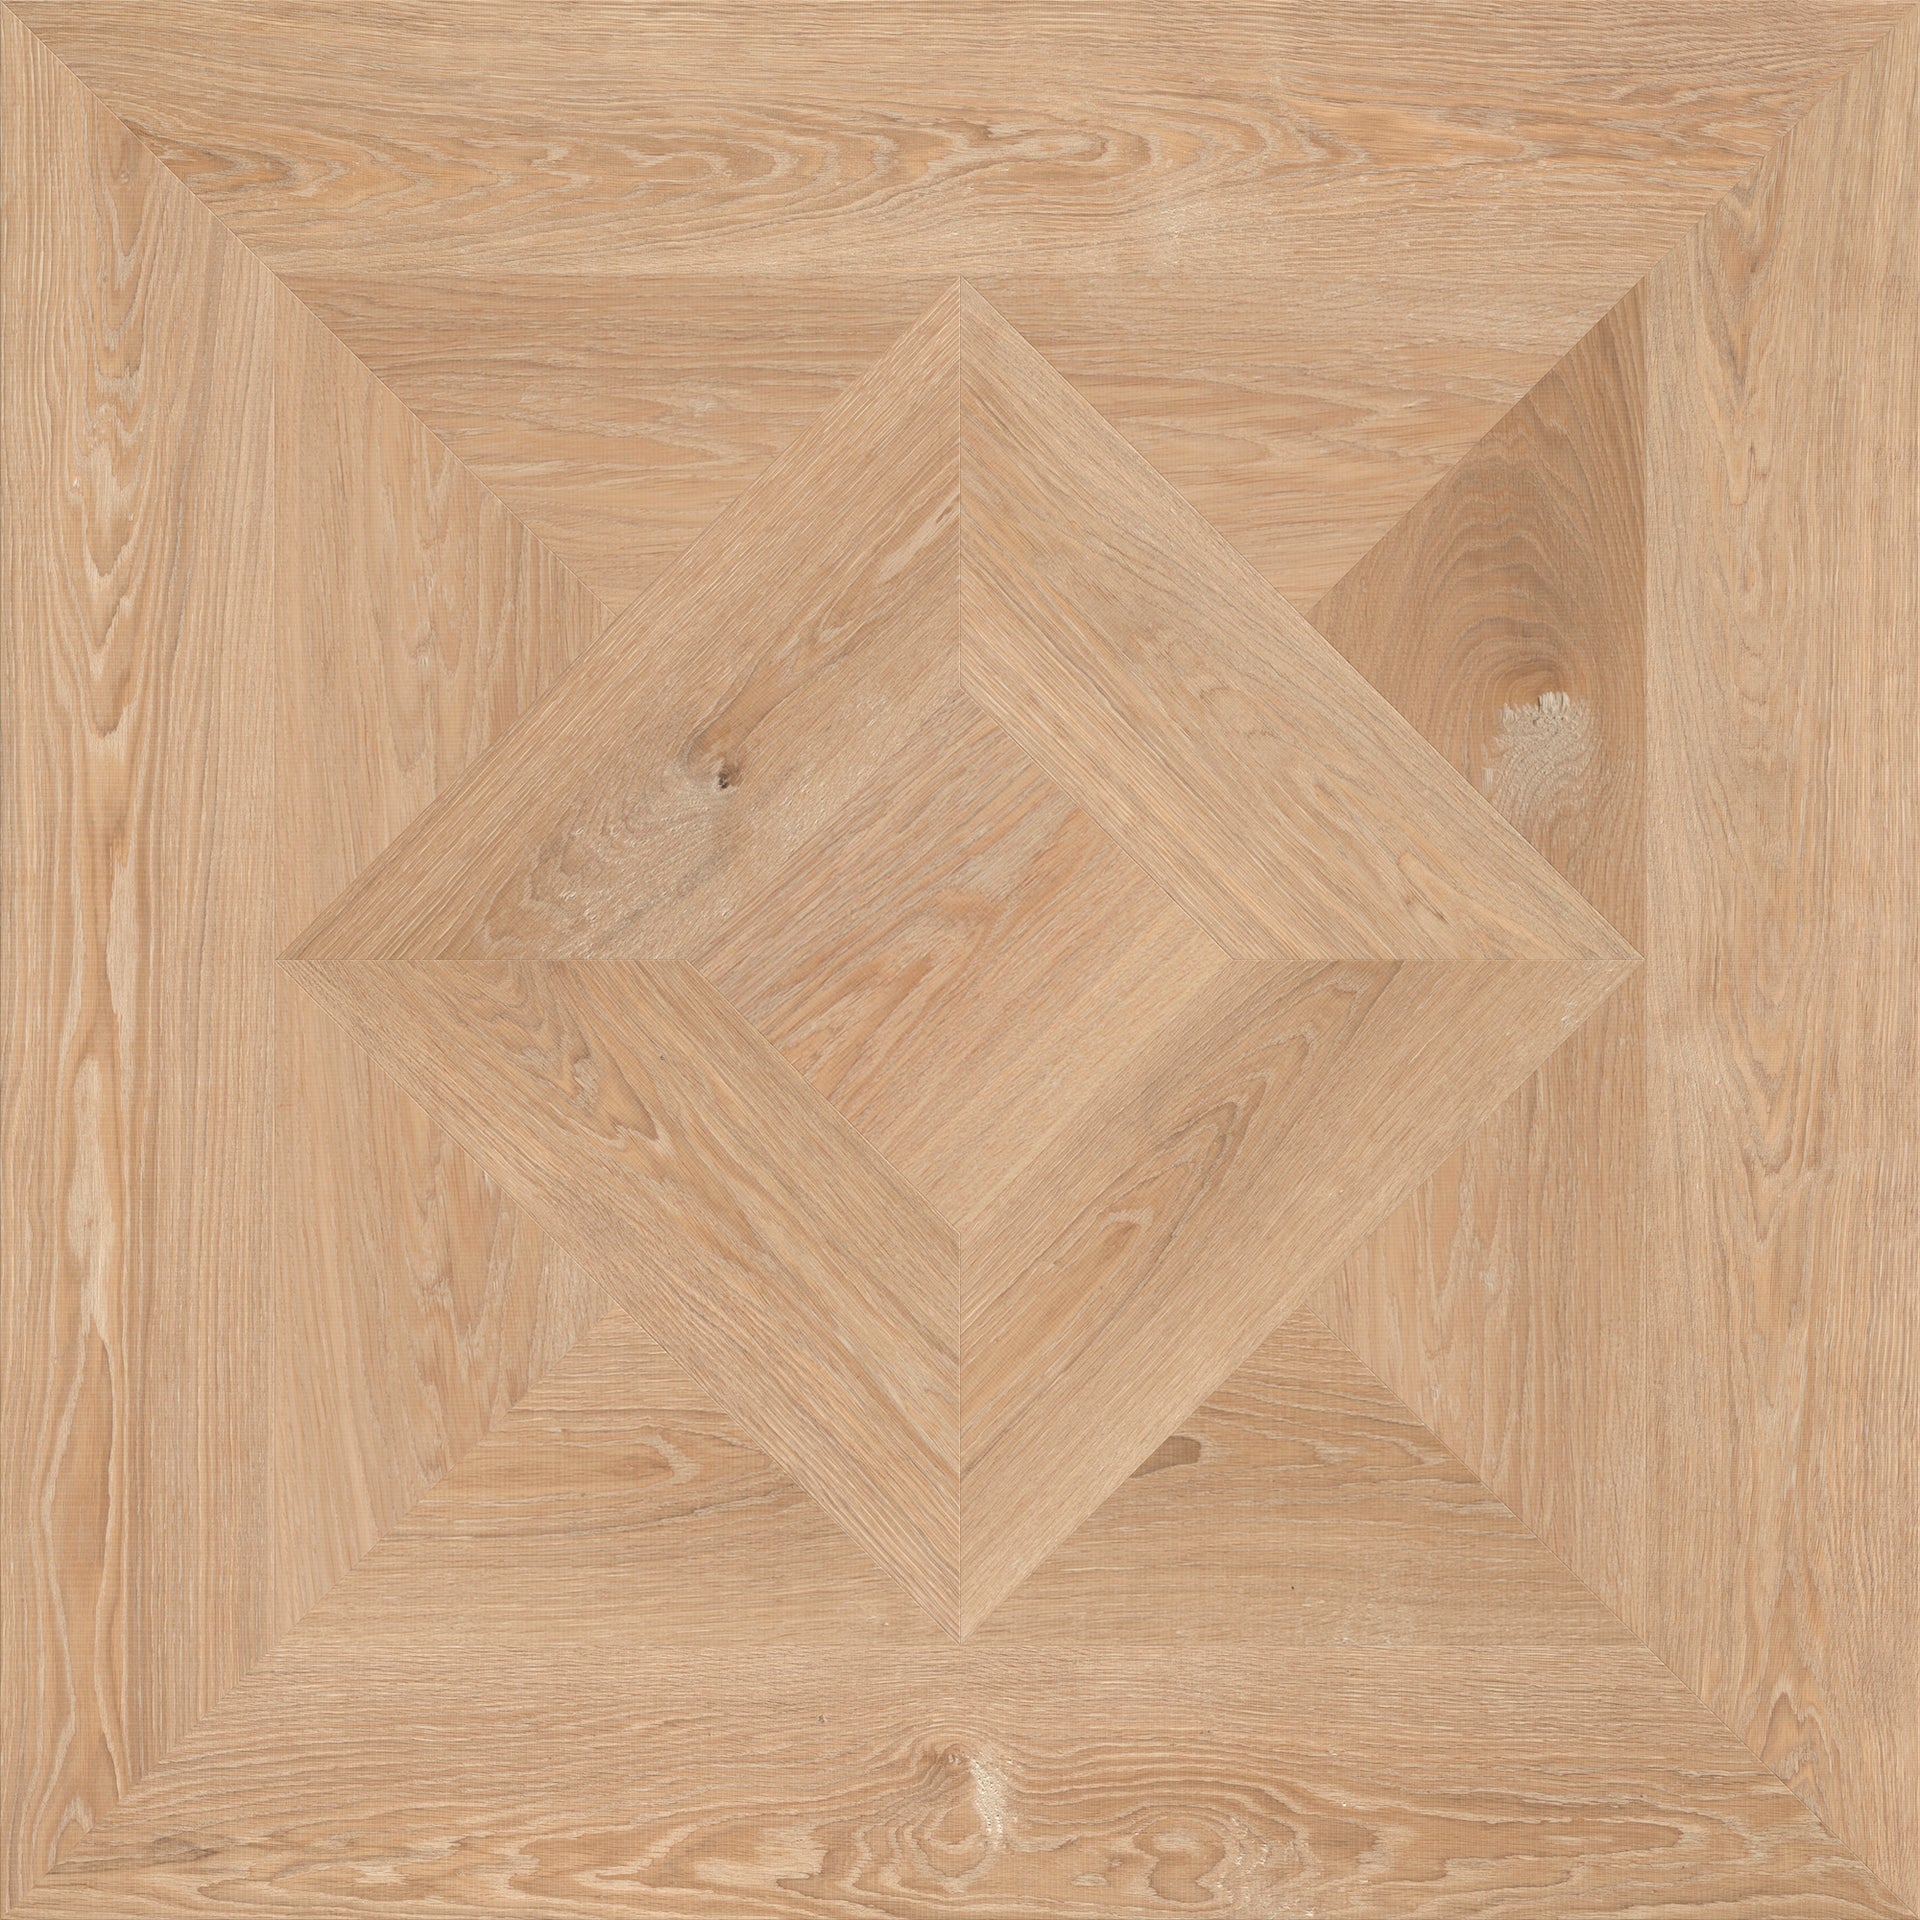 Rhone patroon houten vloeren paneel van Uipkes